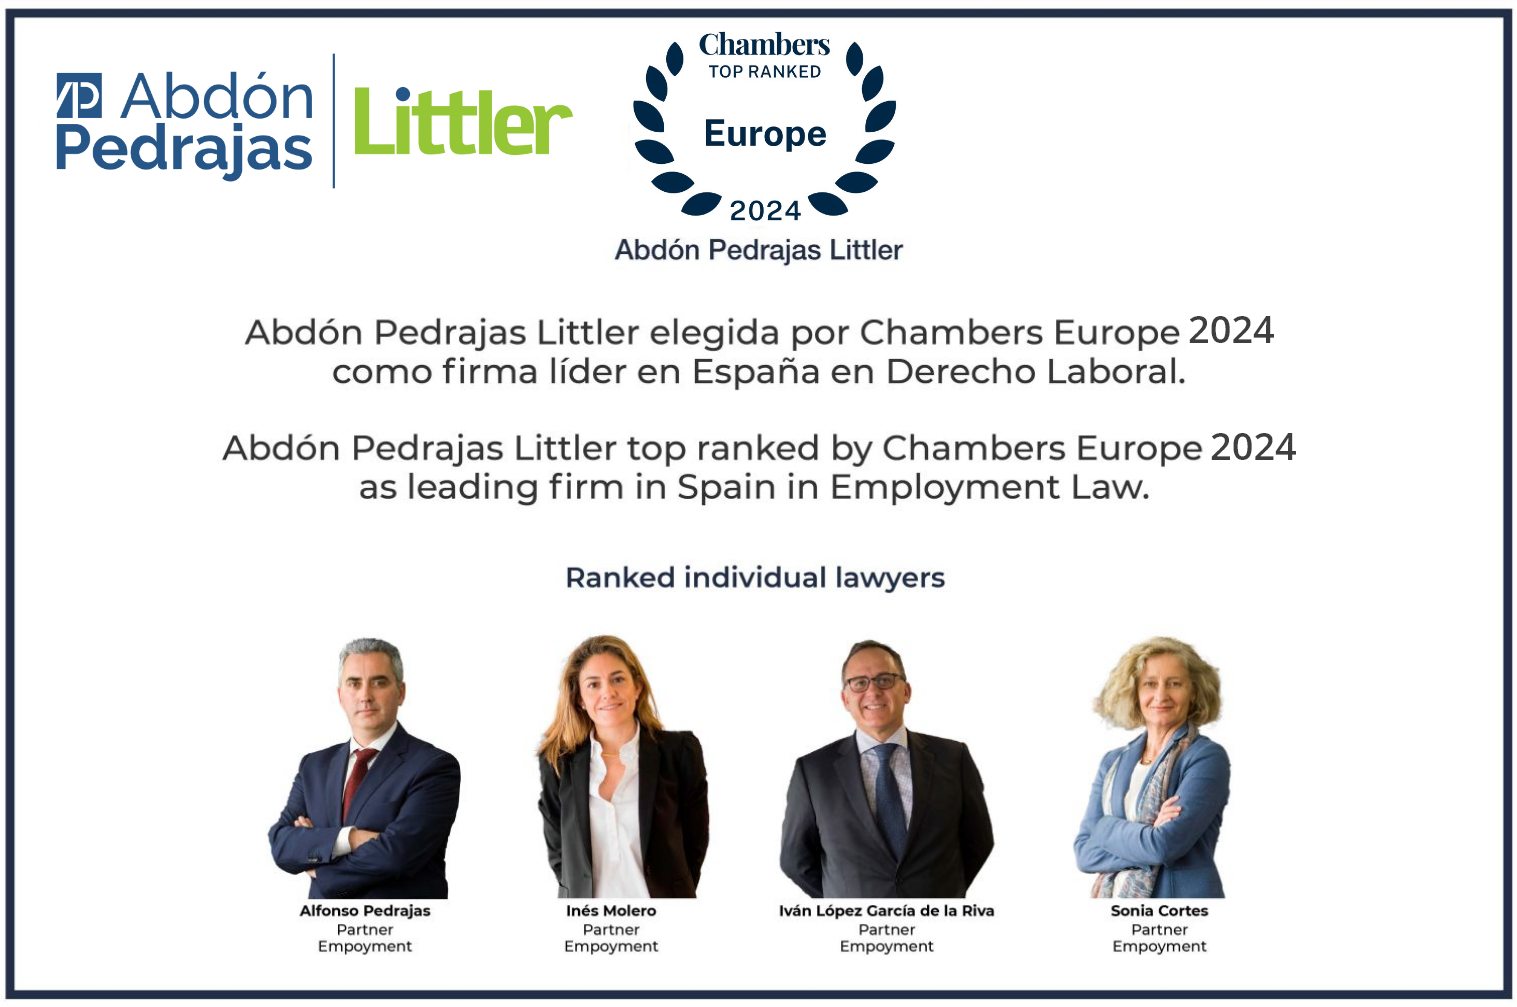 Abdón Pedrajas Littler elegida por Chambers Europe 2024 como firma líder en España en Derecho Laboral.